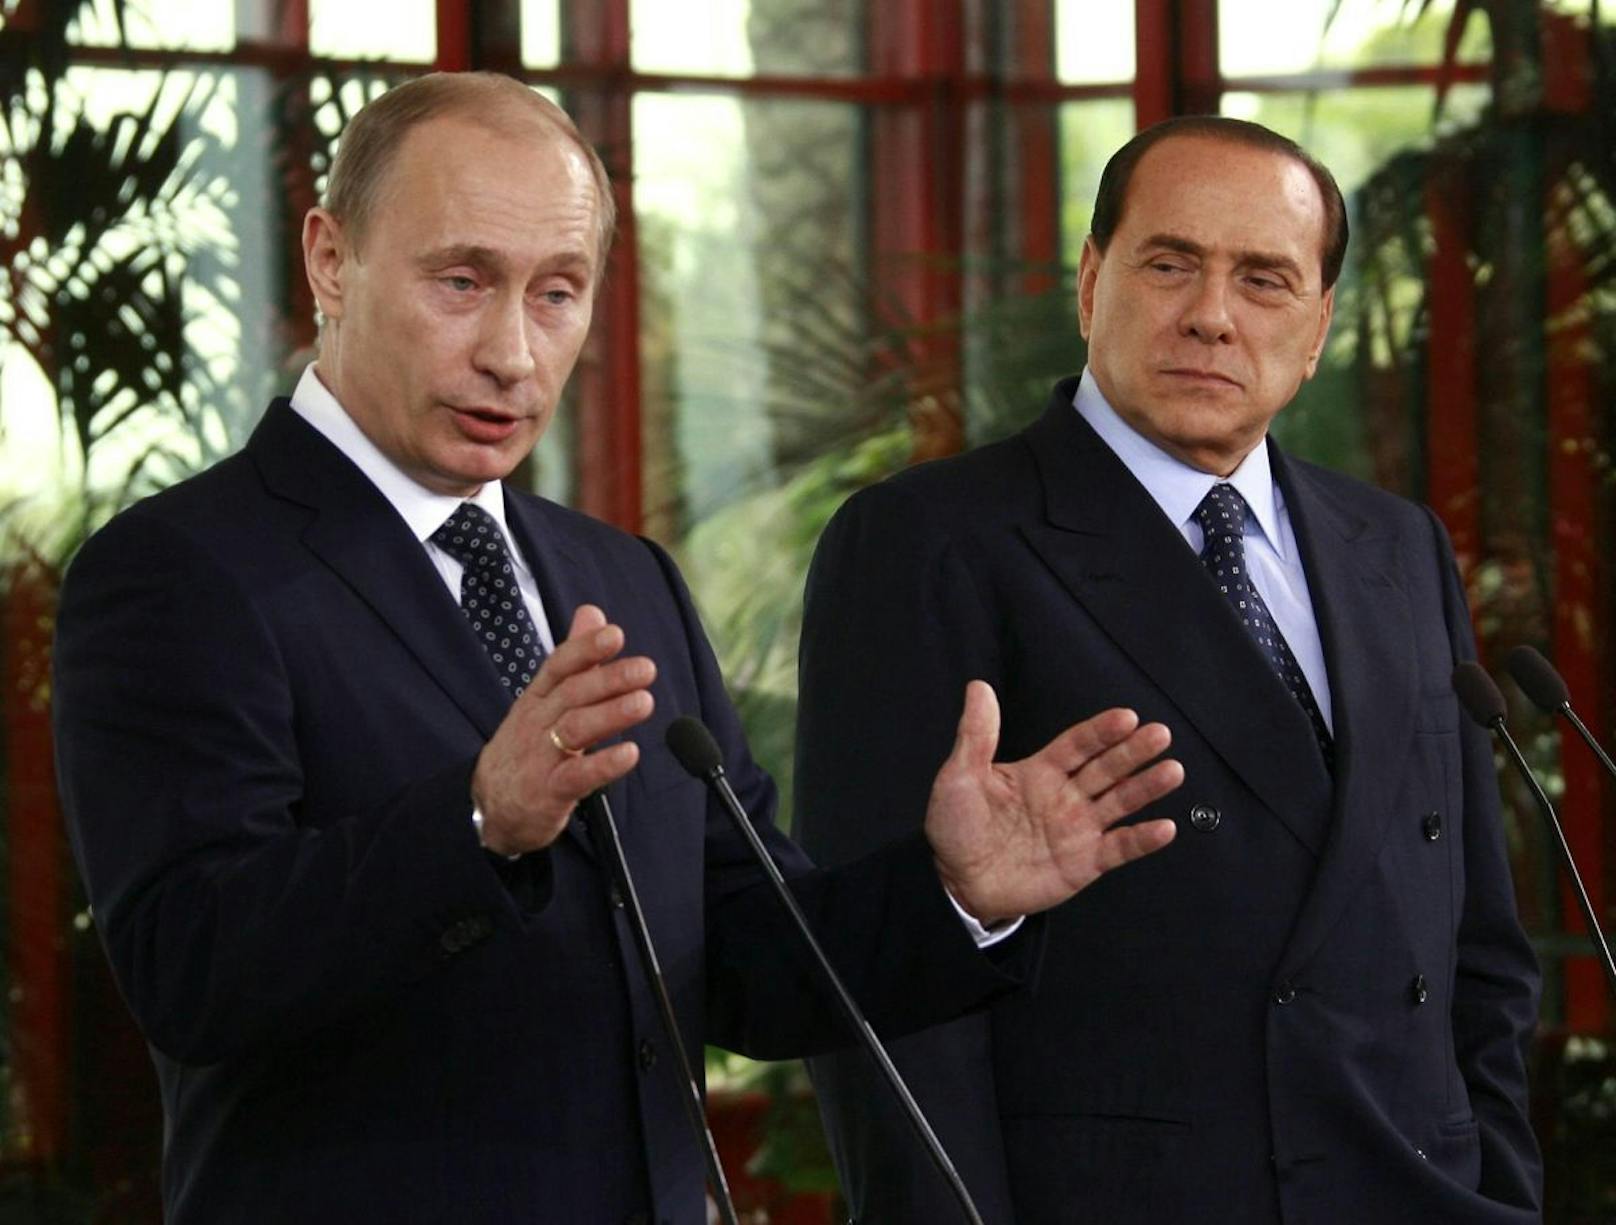 Zum 86. Geburtstag soll Wladimir Putin dem italienischen Ex-Ministerpräsidenten Silvio Berlusconi 20 Flaschen Wodka geschenkt haben. (Archivbild)